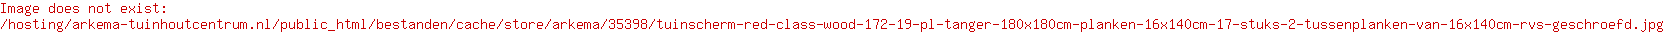 Tuinscherm Red Class Wood (17+2) 19-pl. Tanger 180x180cm Planken: 1.6x14.0cm / 17 stuks 2 tussenplanken van 1.6x14.0cm, rvs geschroefd